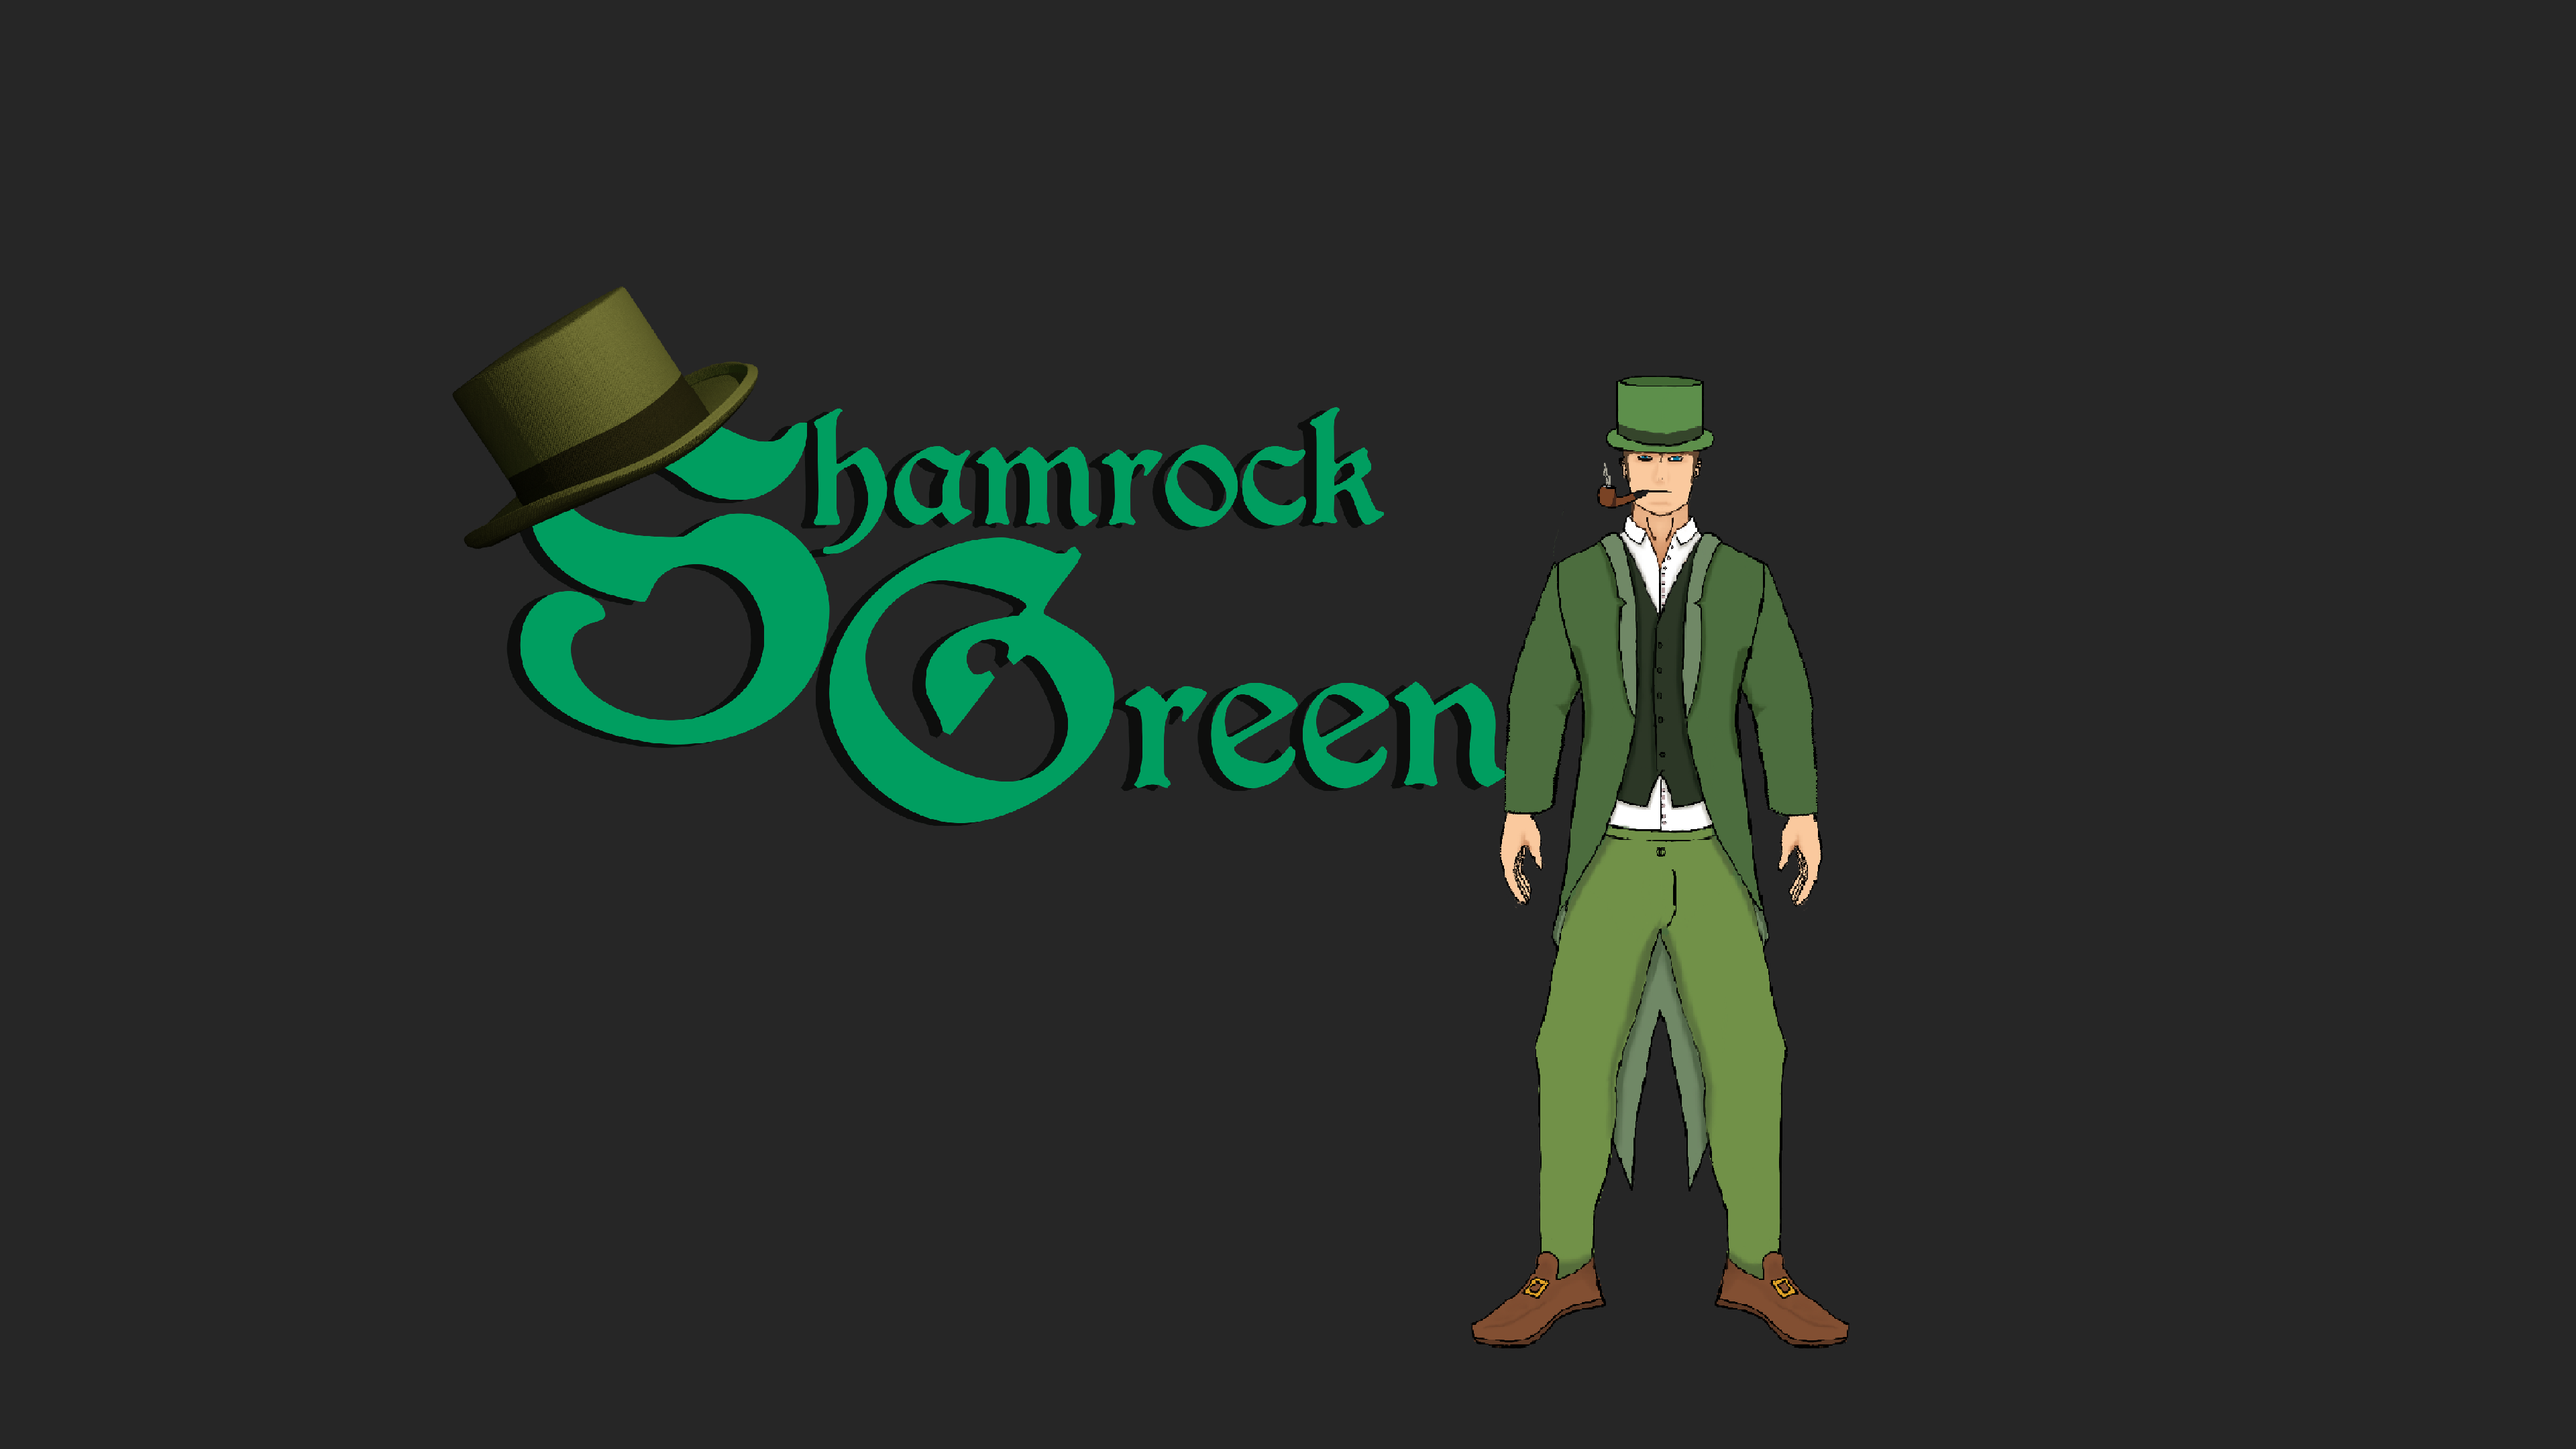 Shamrock Green